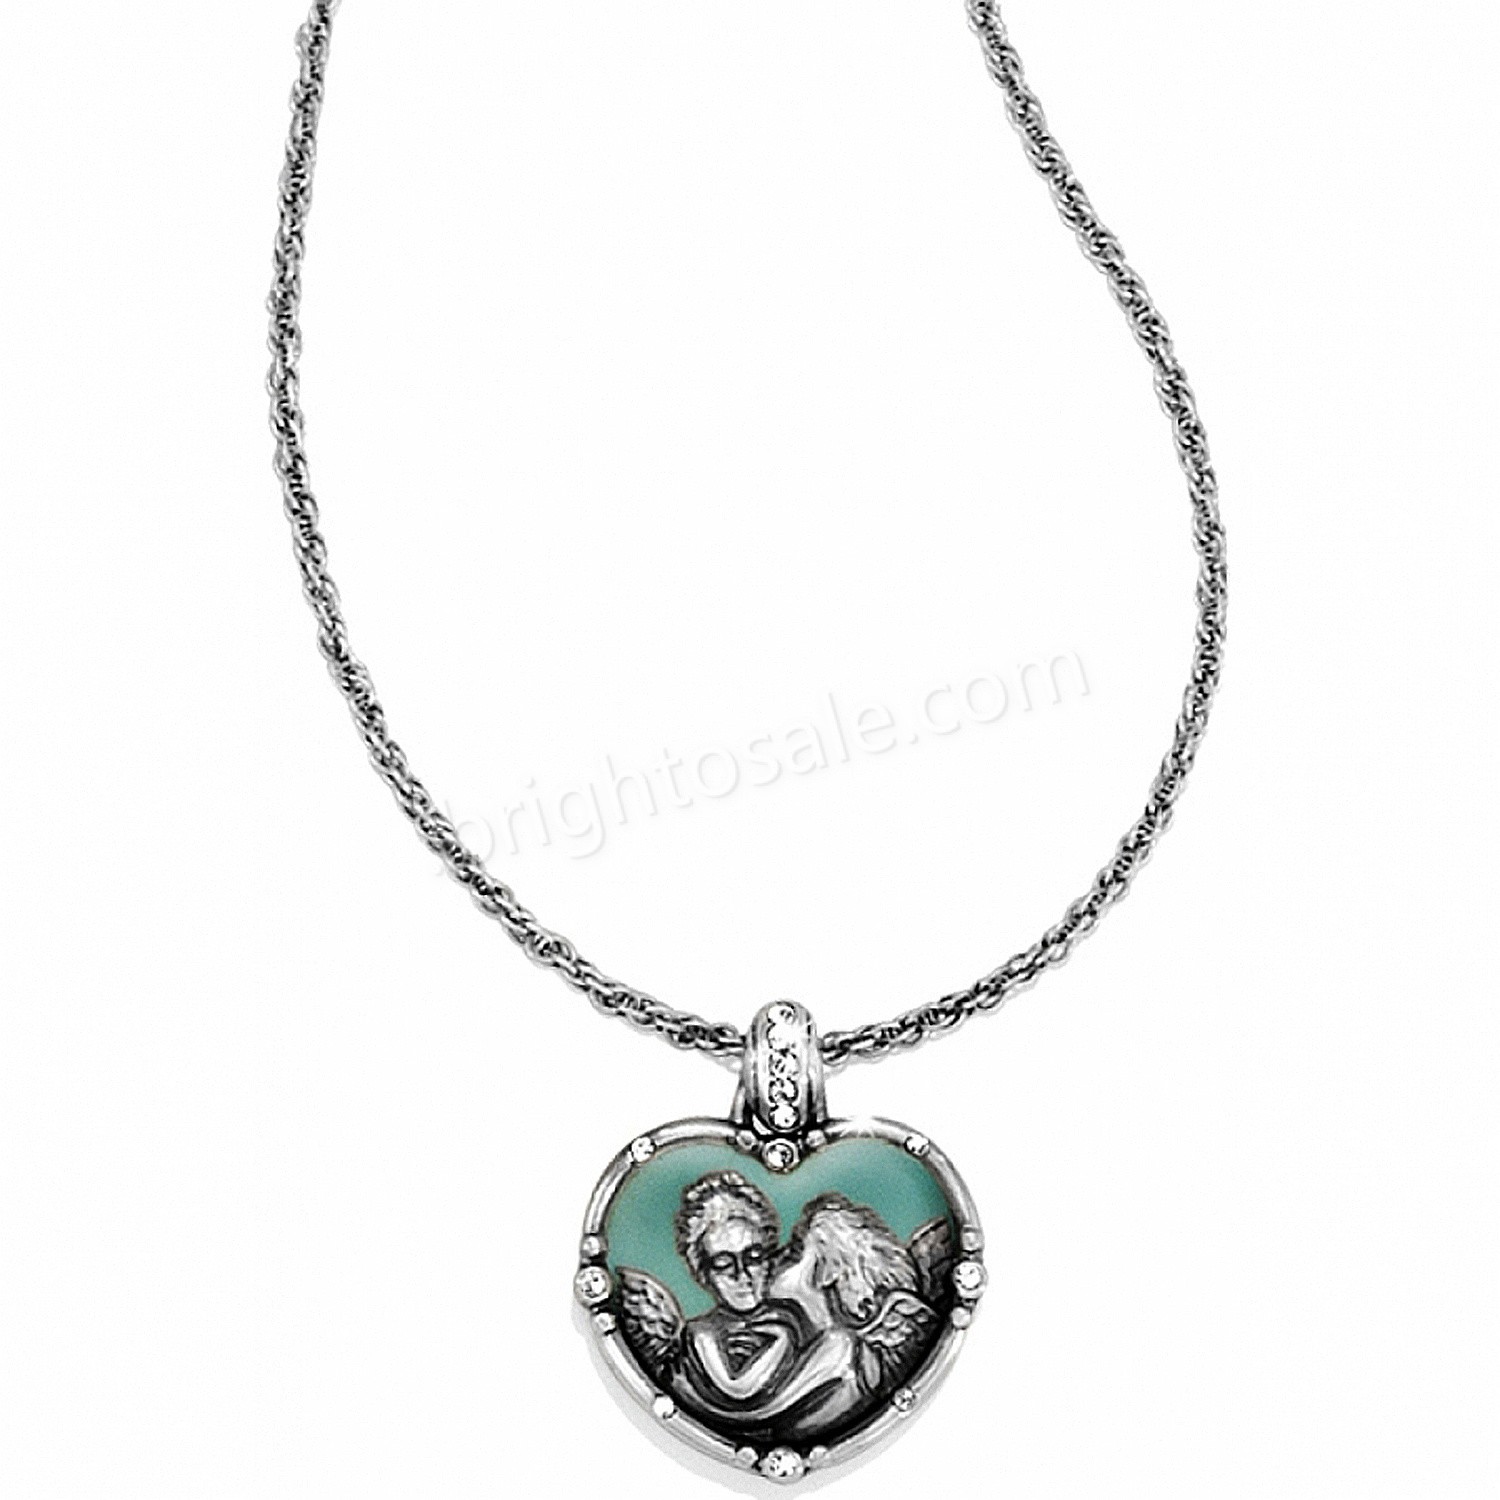 Brighton Collectibles & Online Discount Vertigo Heart Long Necklace - Brighton Collectibles & Online Discount Vertigo Heart Long Necklace